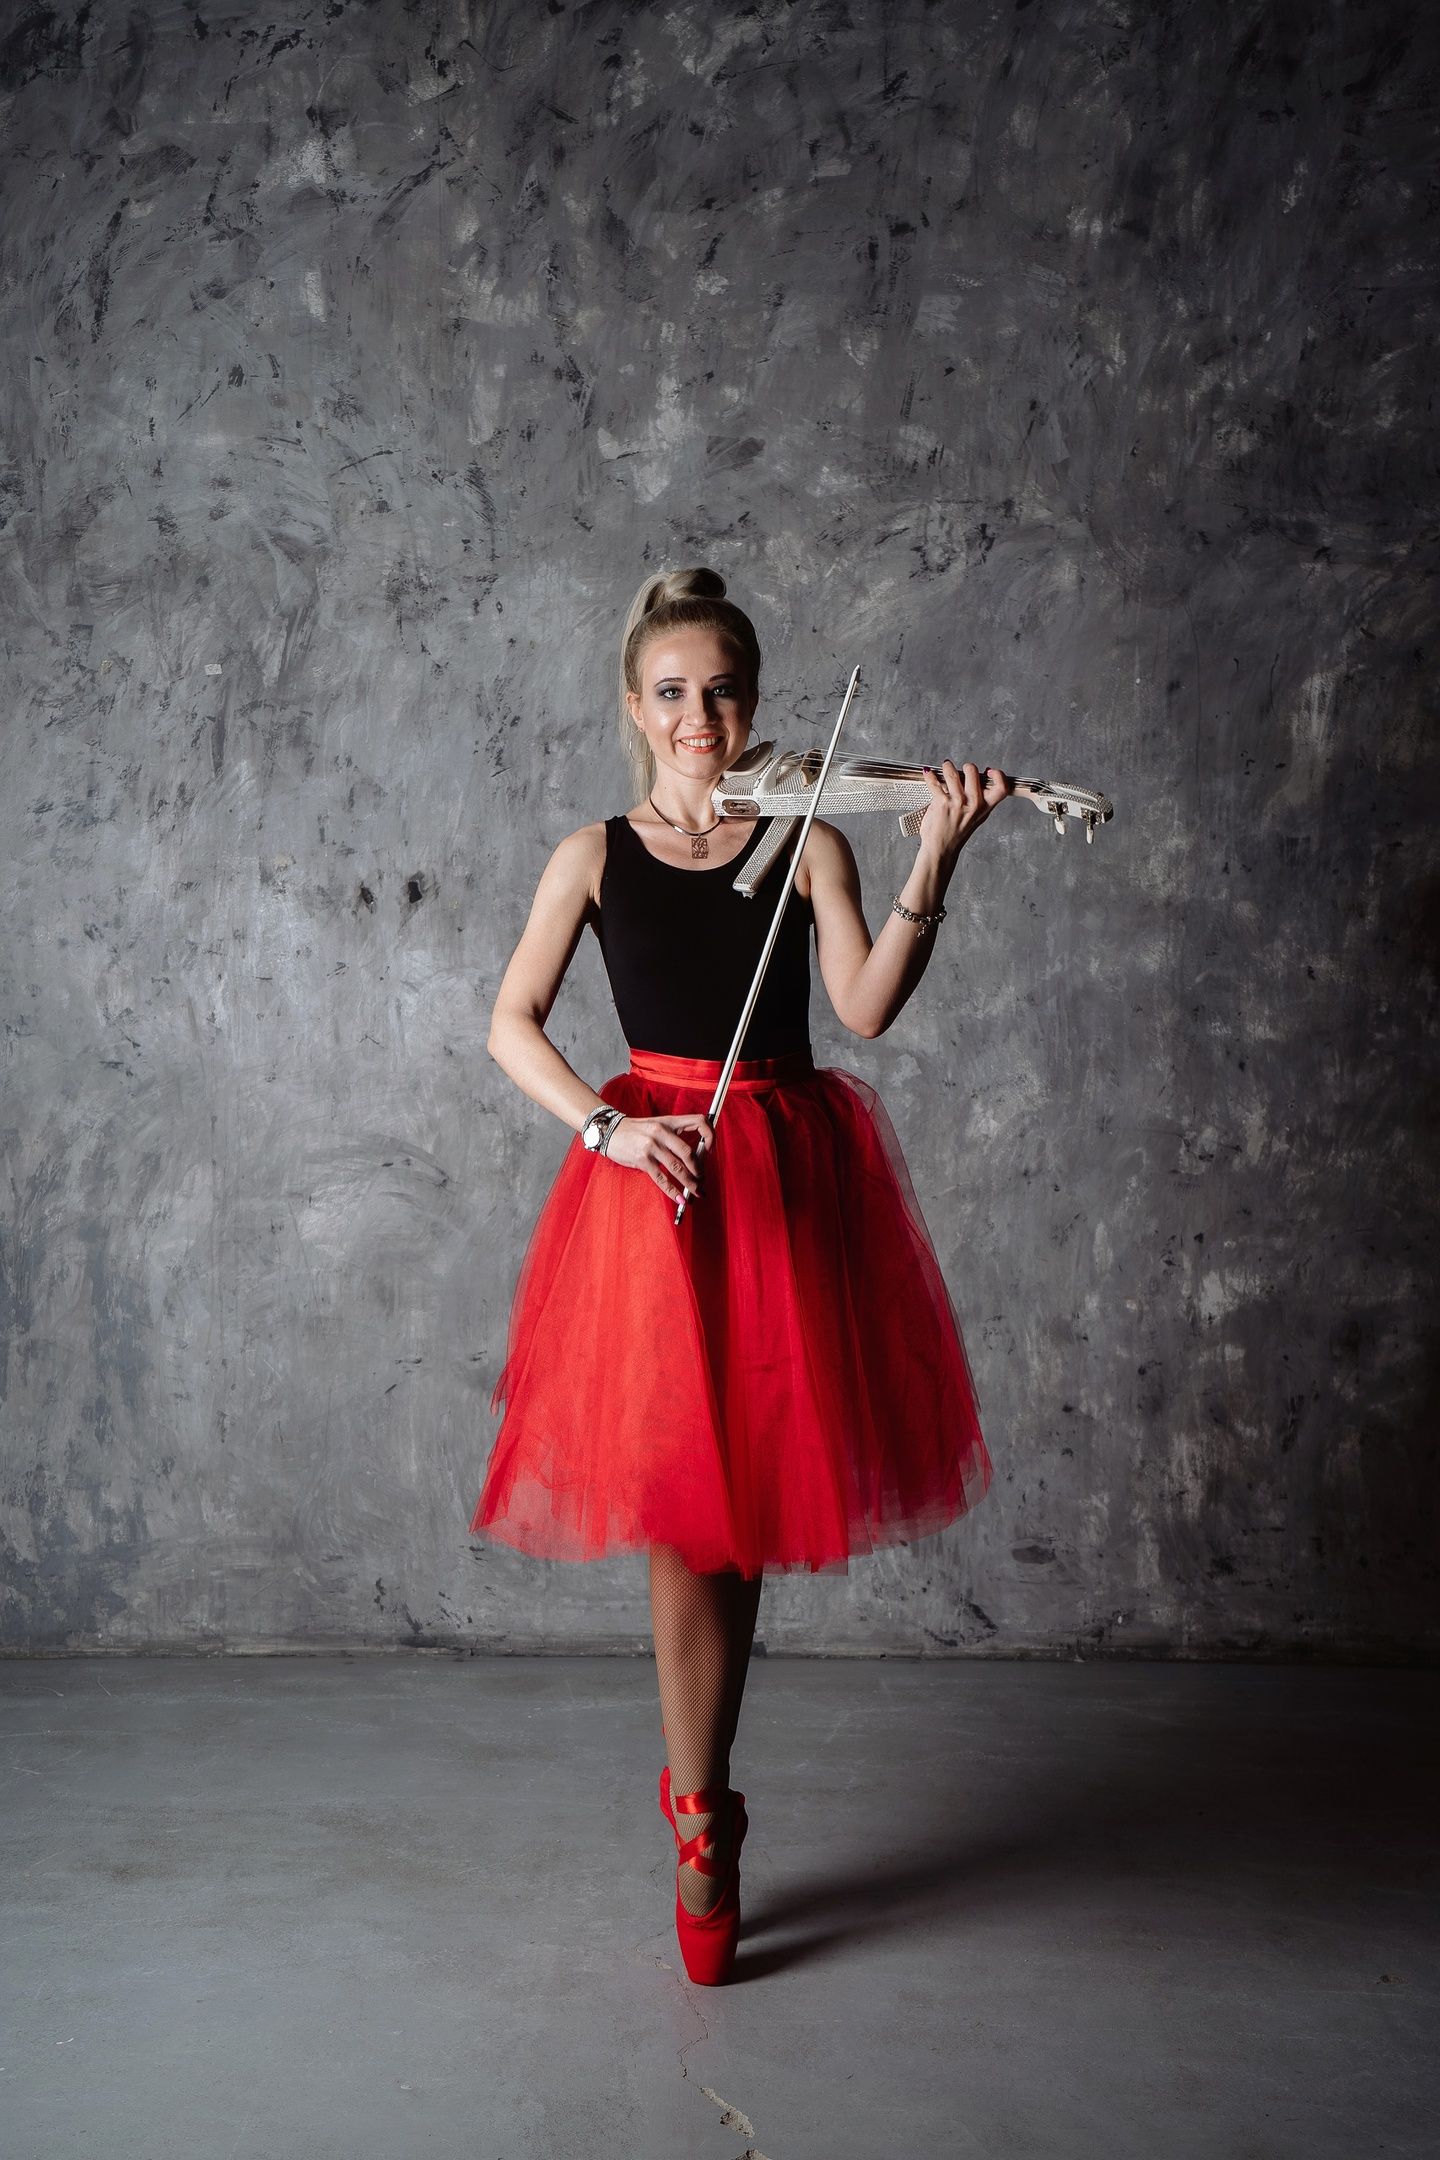 Мелодии Скрипки и Сердца: За Кулисами Музыкального Мира с Евгенией Мальцевой